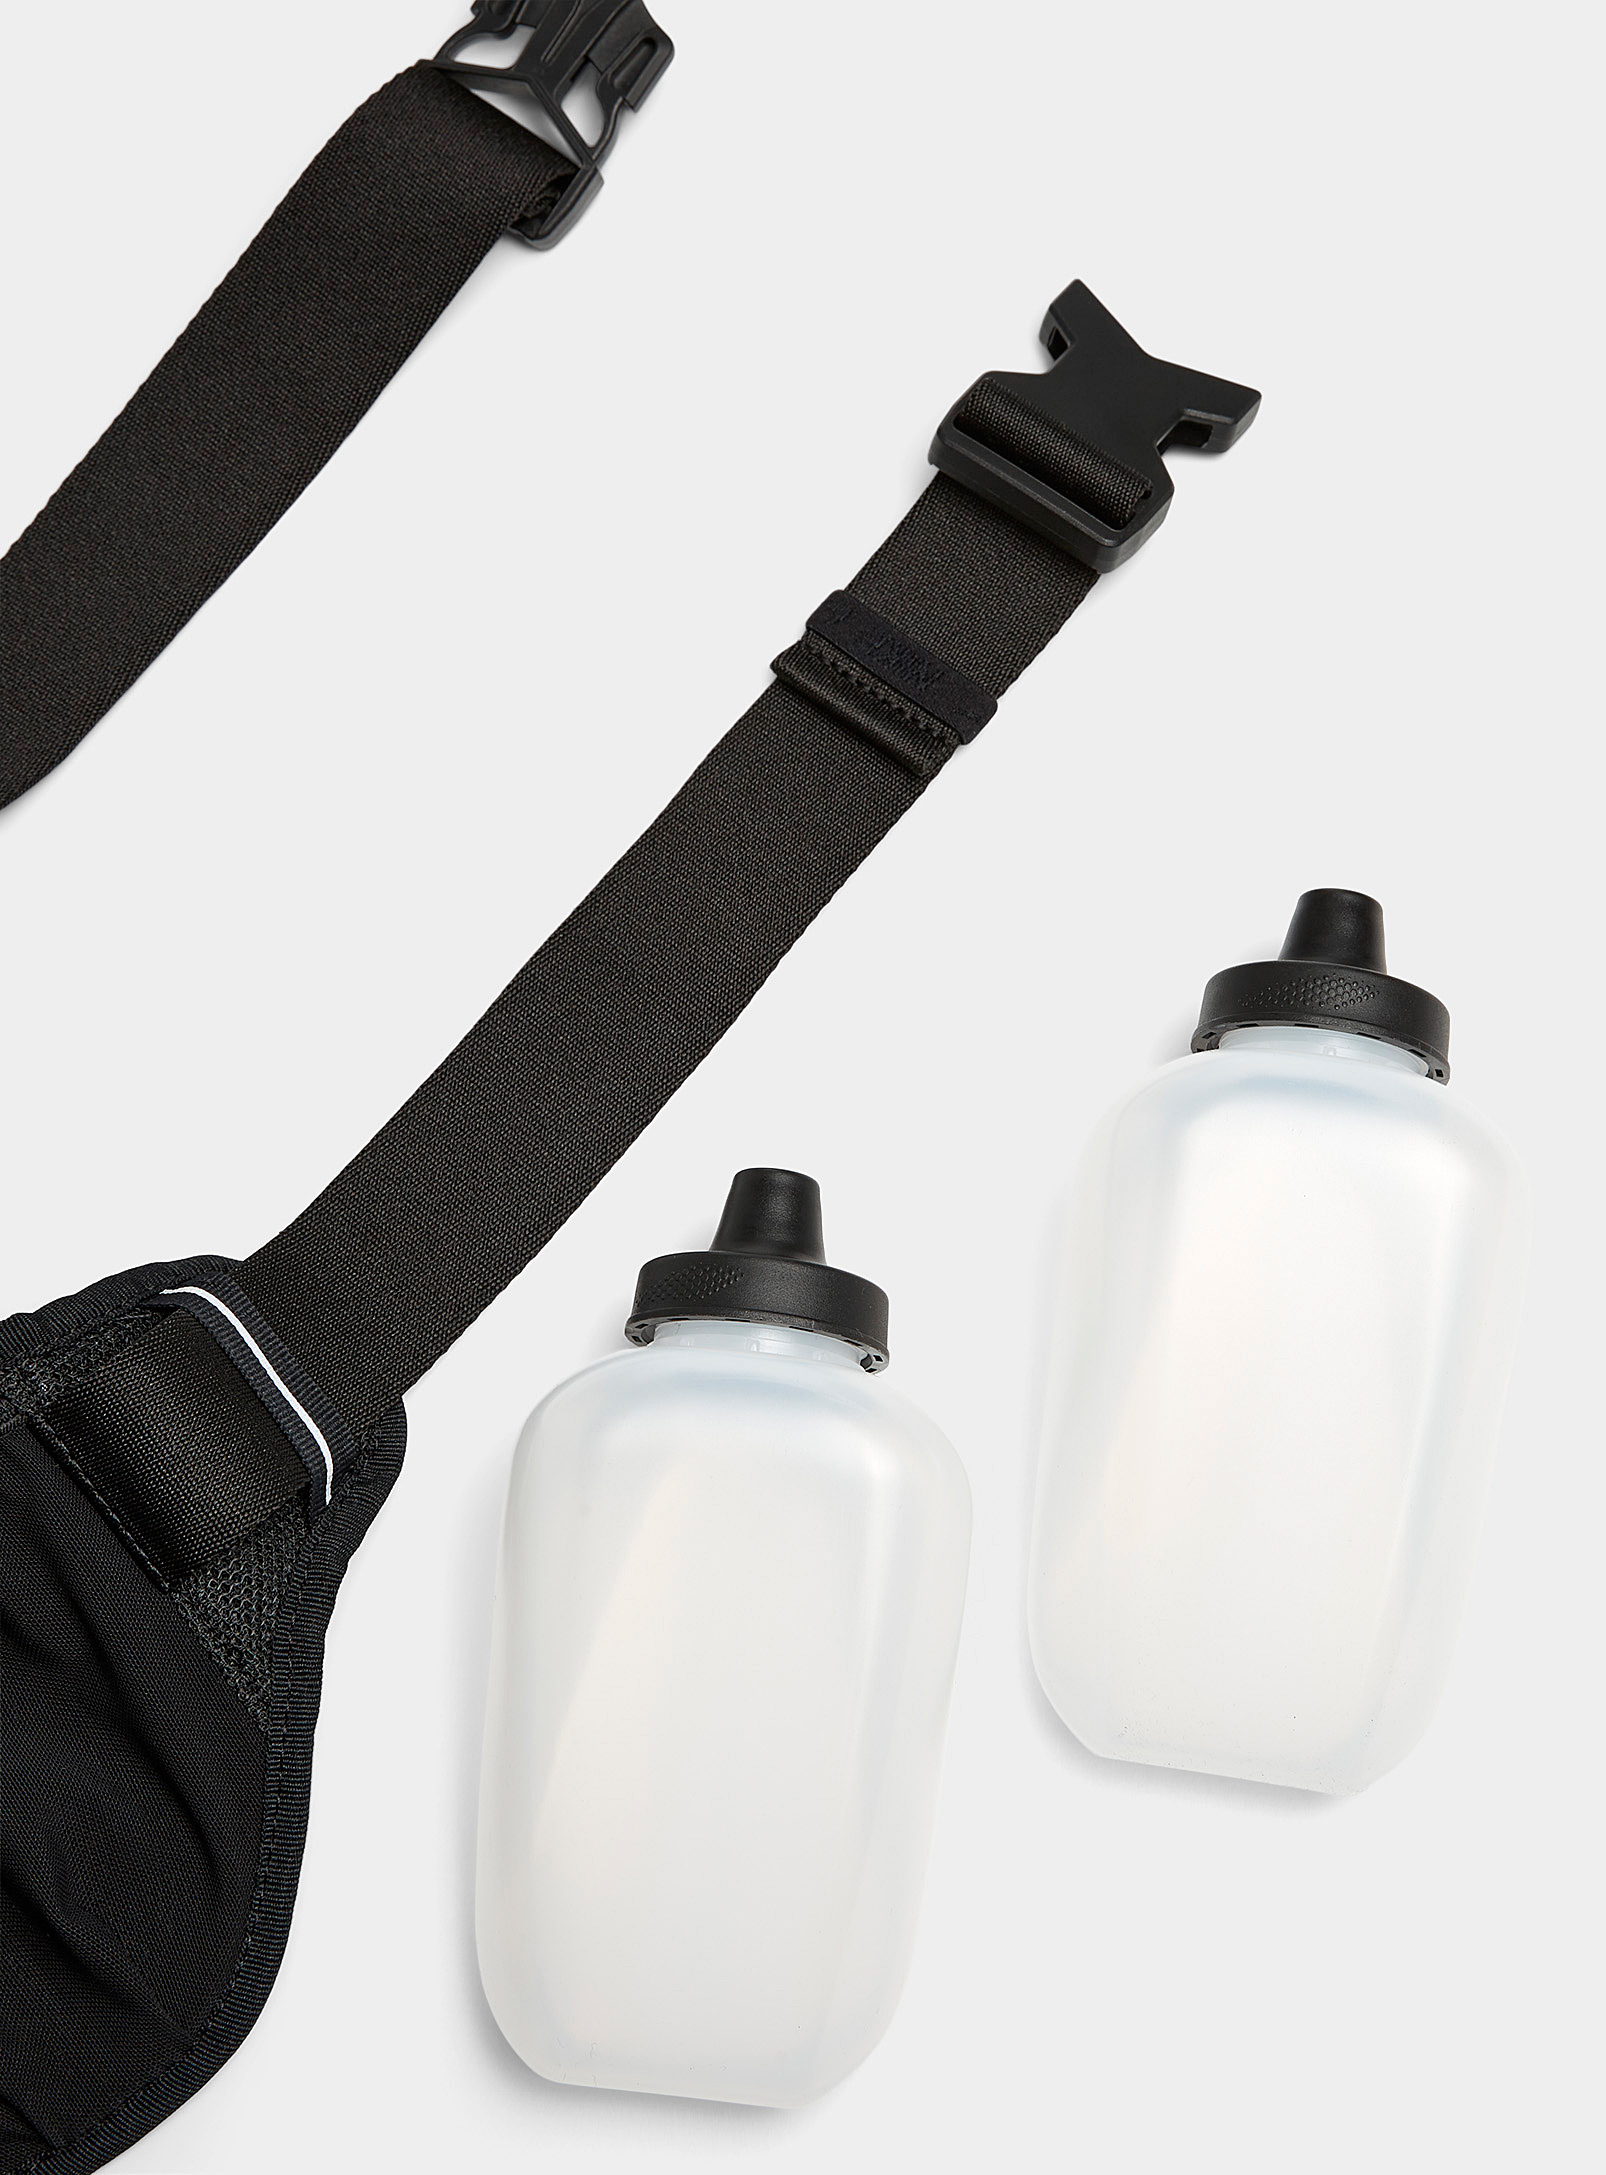 Nike - La ceinture de course double flasques